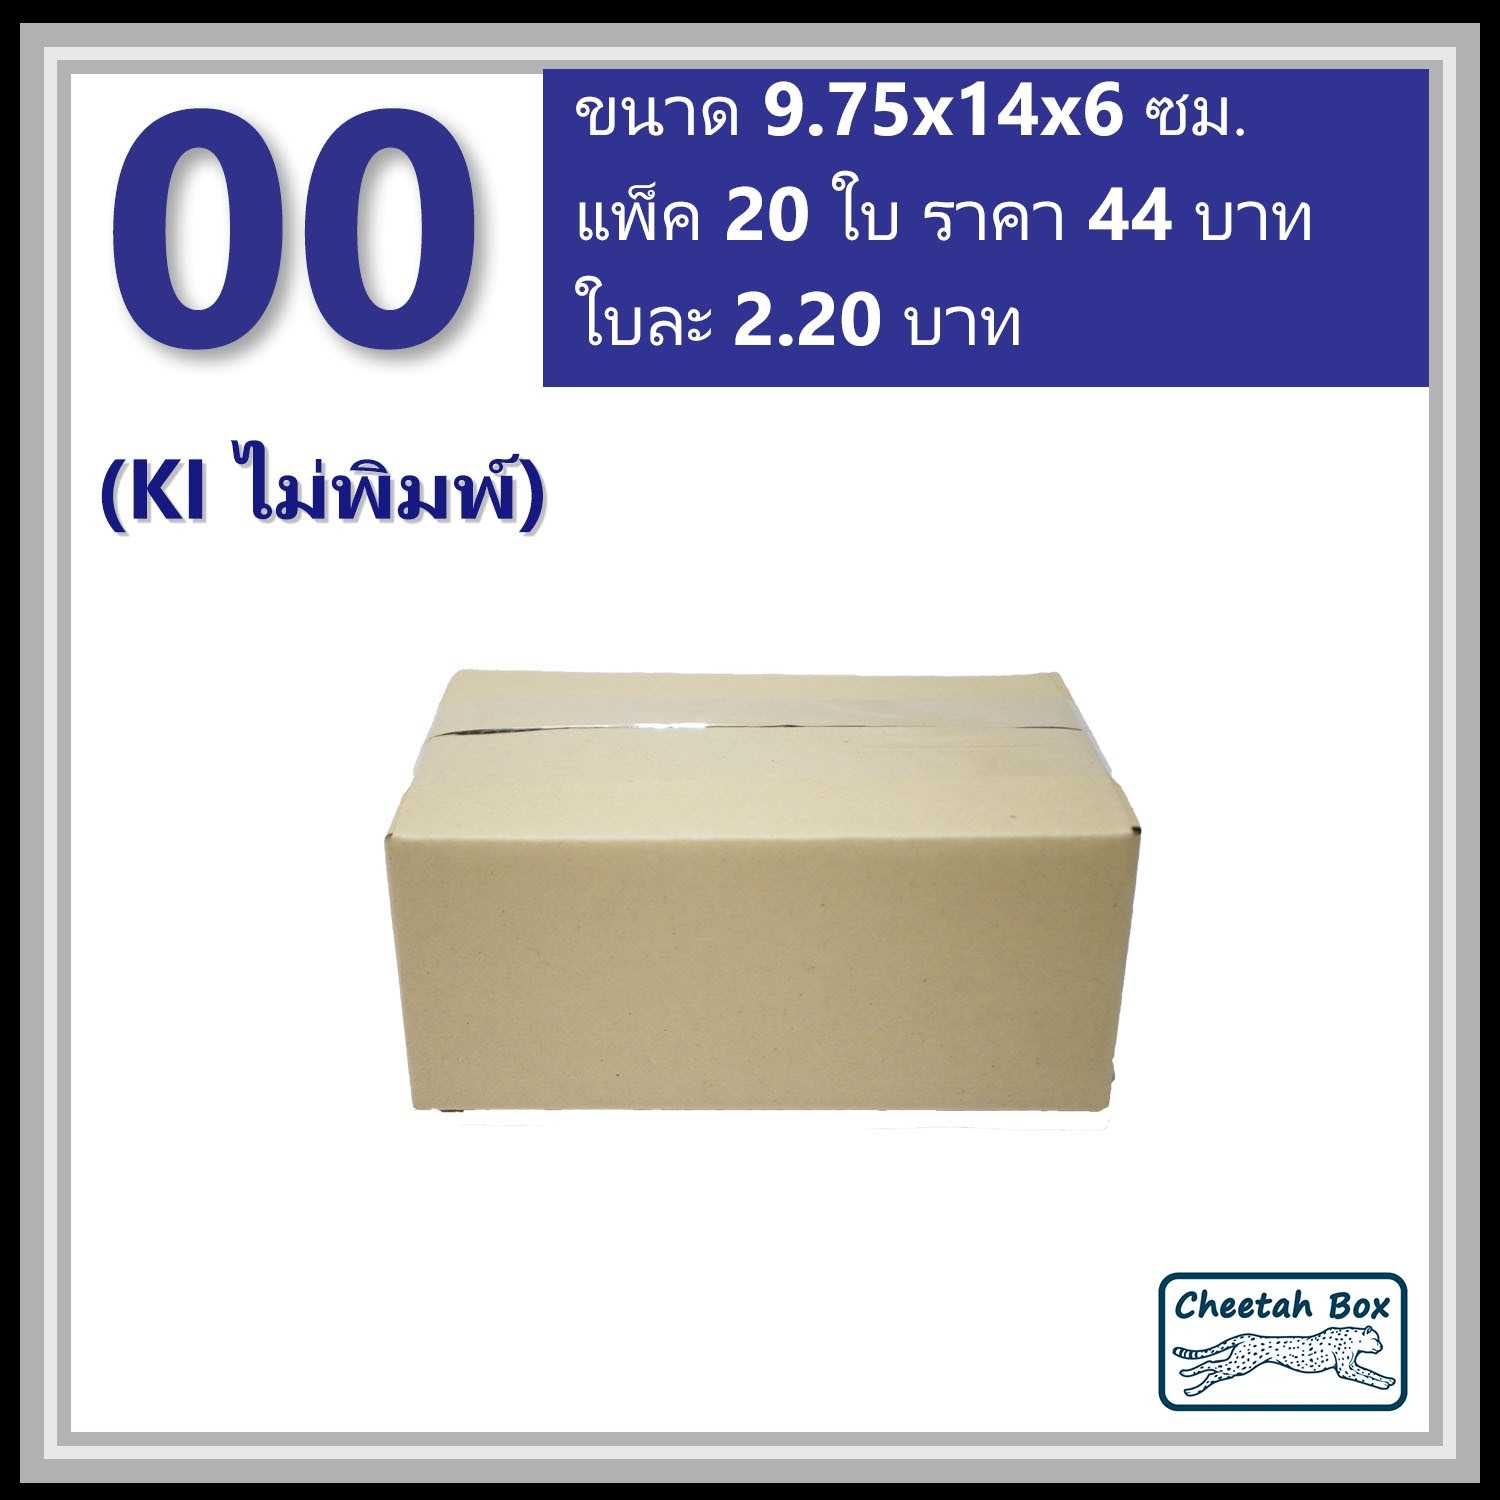 กล่องพัสดุ 00 ไม่พิมพ์ (Post Box) ลูกฟูก 3 ชั้น ขนาด 9.75W x 14L x 6H cm.